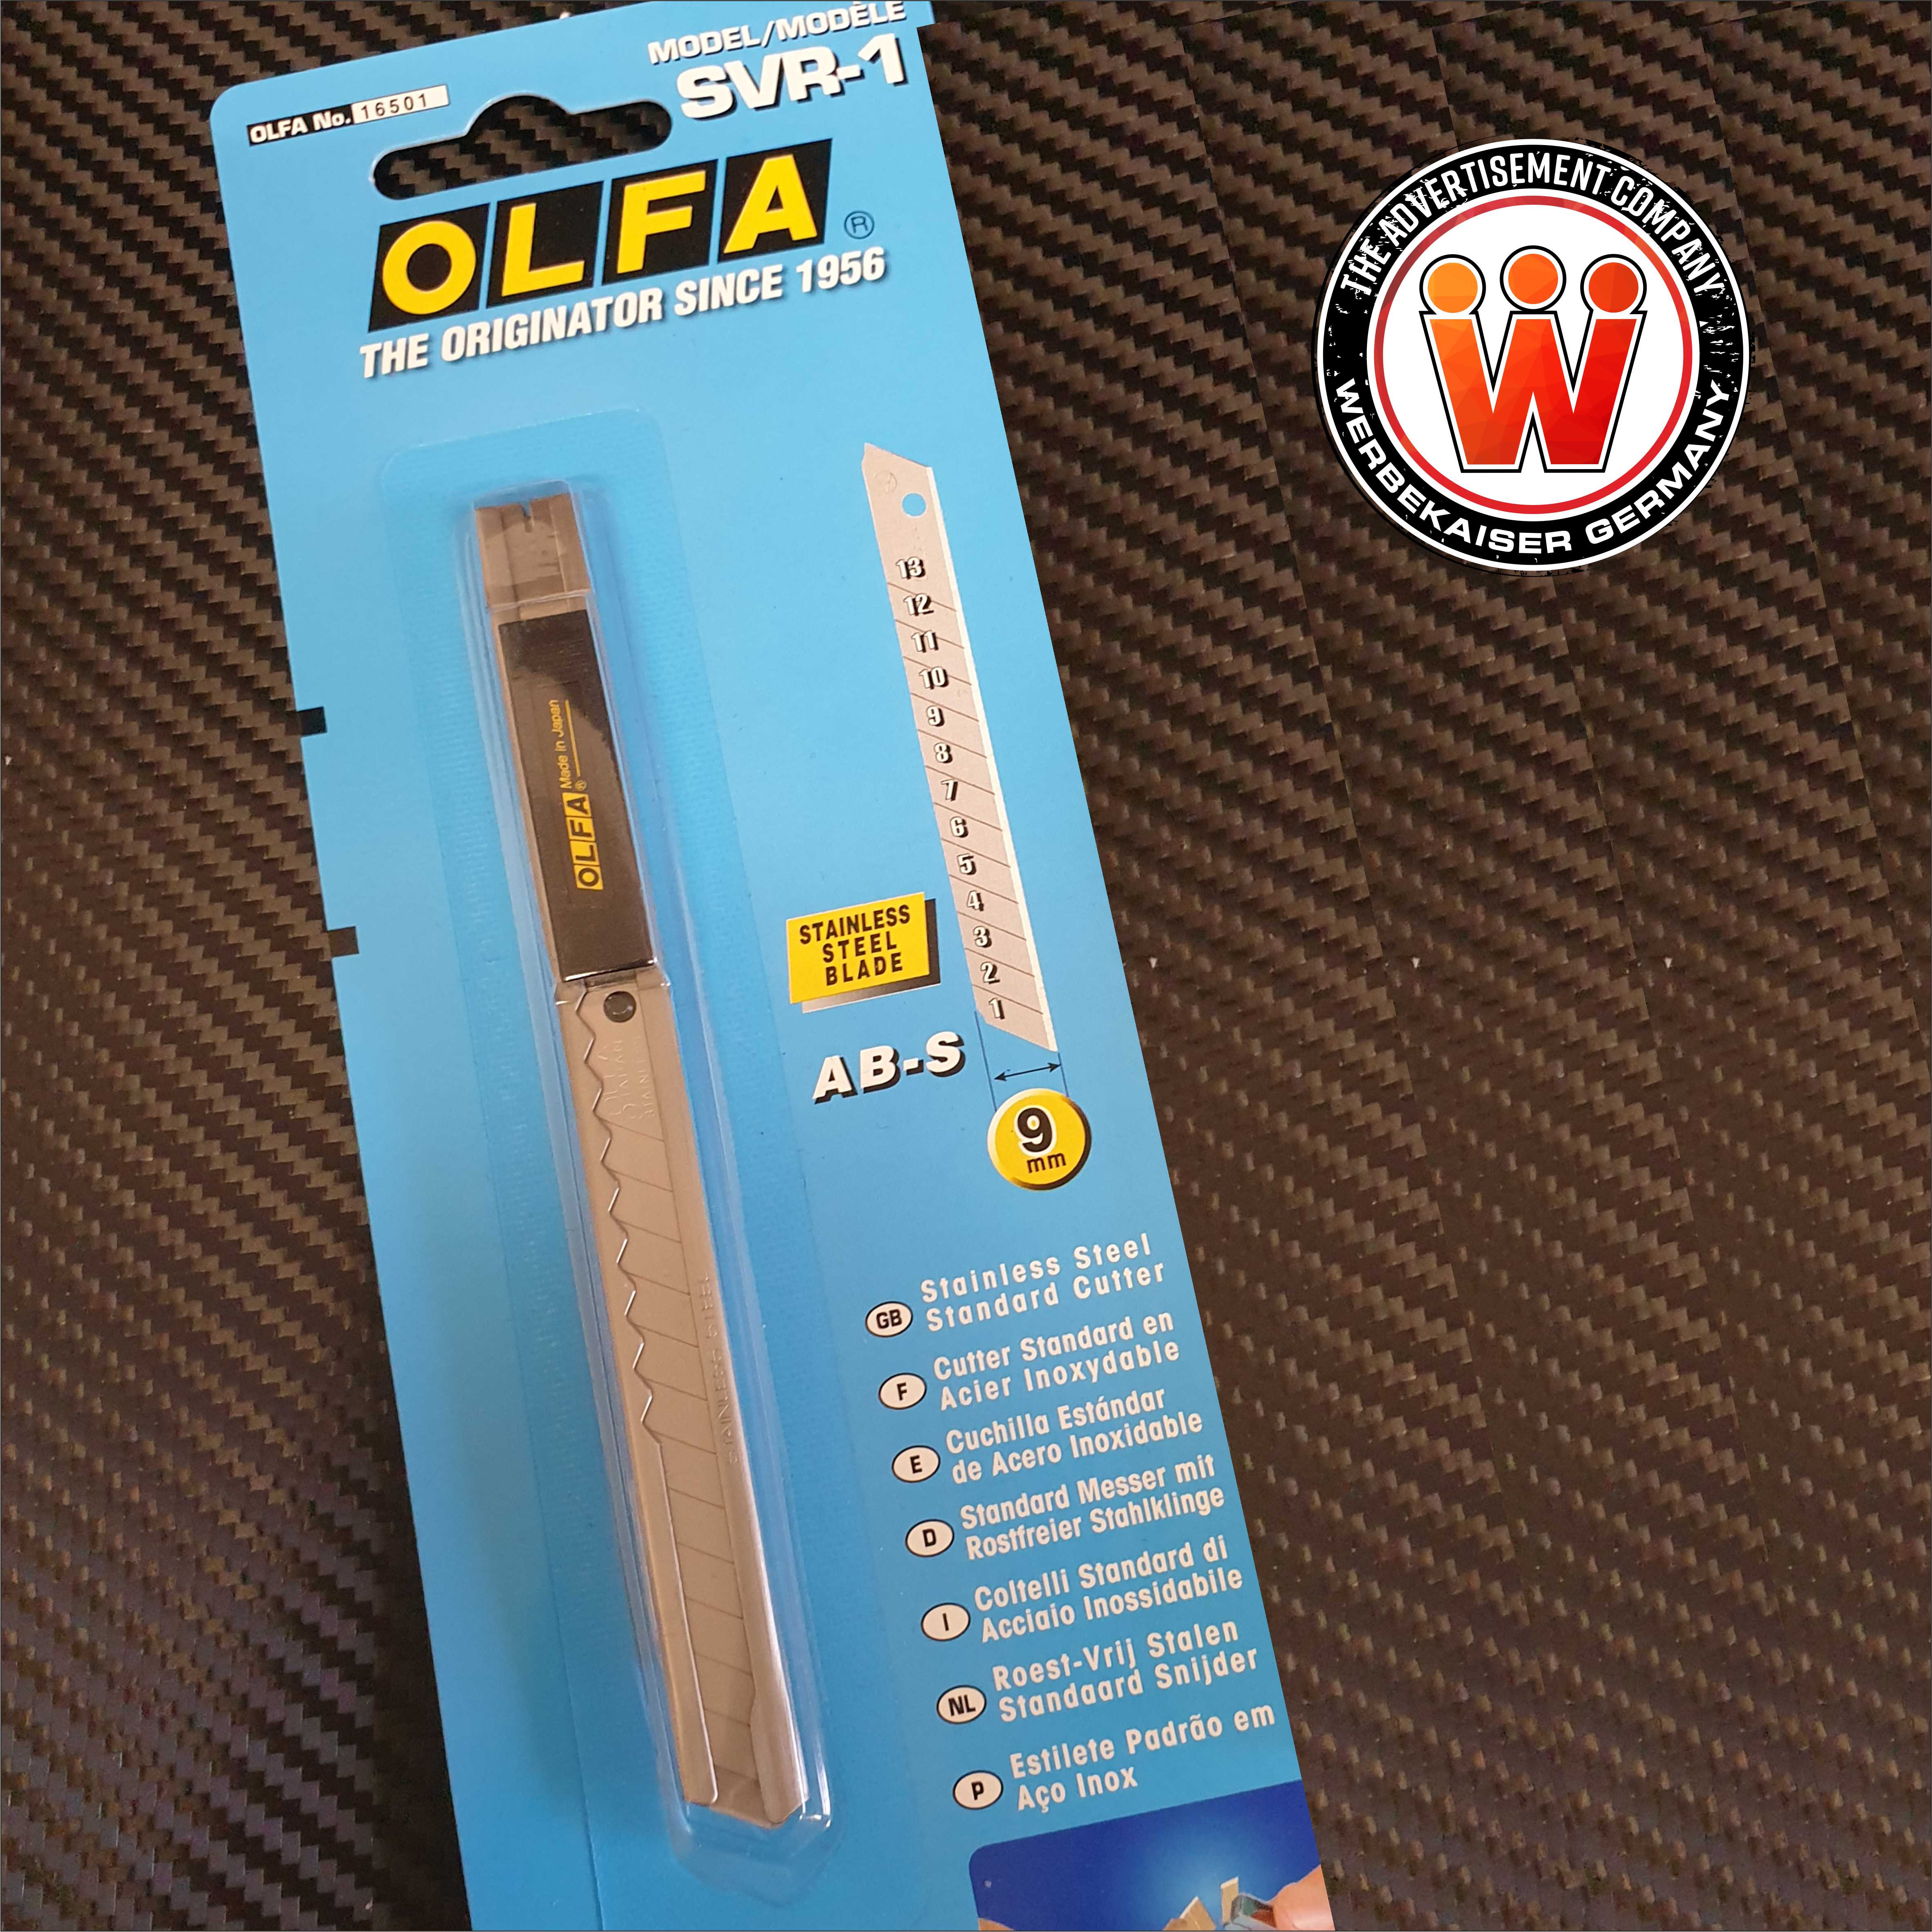 Olfa® SVR1 Cutter Messer 9 mm 58° Edelstahl